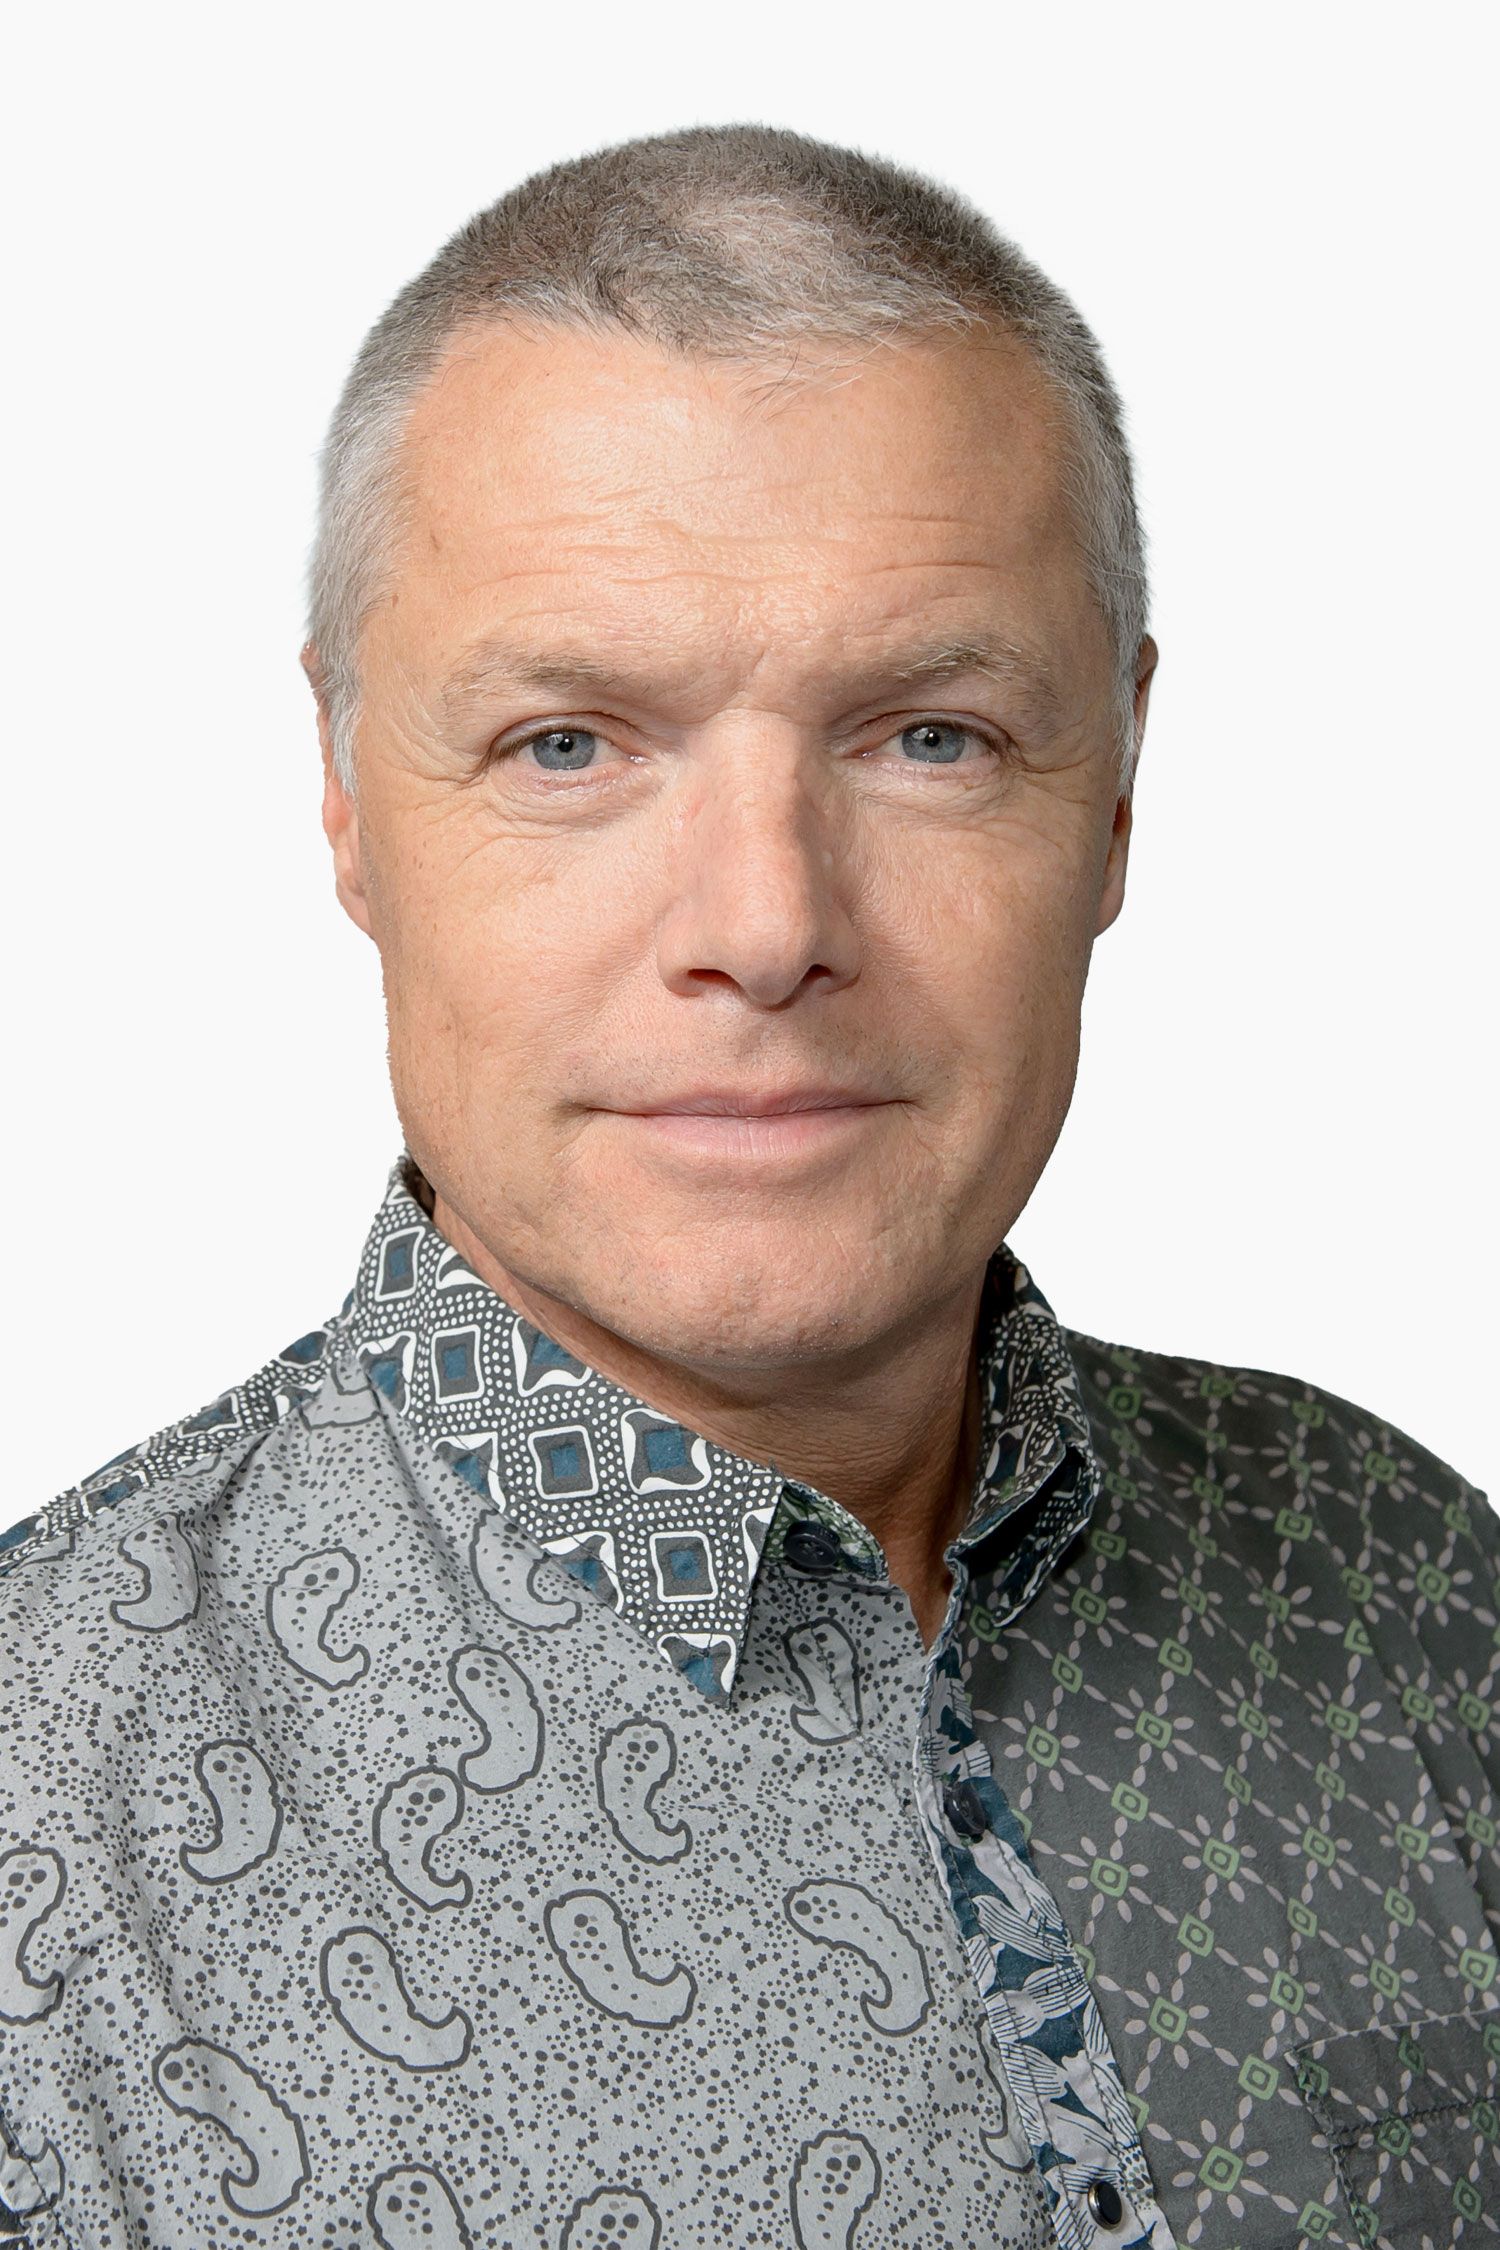 Jörg P. Bünting, Facharzt für Orthopädie, Unfallchirurgie und Chirurgie